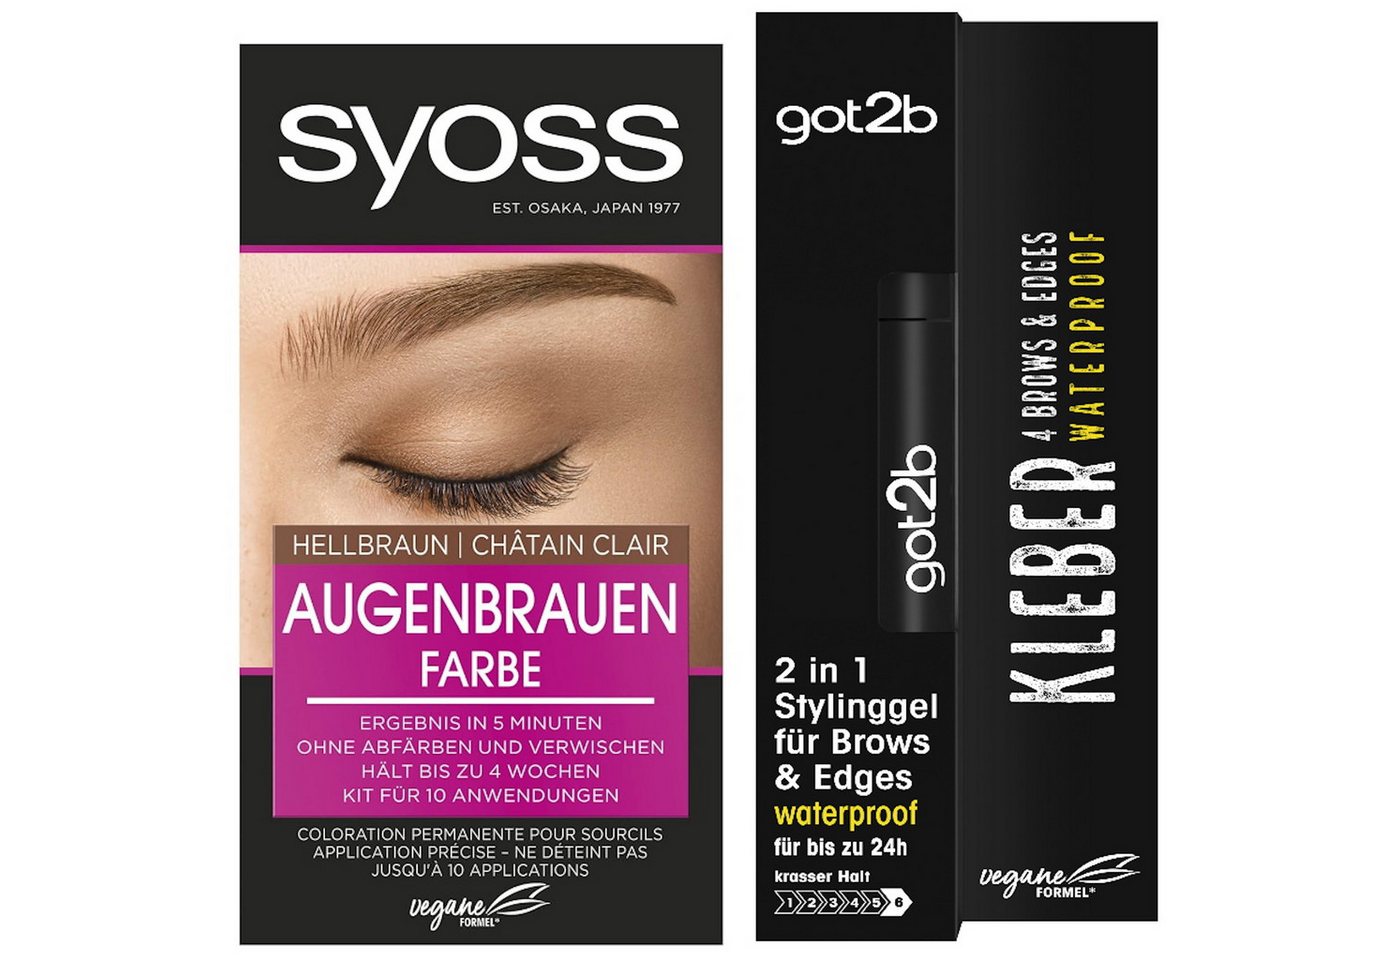 Syoss Augenbrauenfarbe Hellbraun 17ml & GOT2B 2in1 Stylinggel Kleber 4 Brows & Edges16ml, 2-tlg., langanhaltend, schweiß- & wasserfest bis zu 24h von Syoss